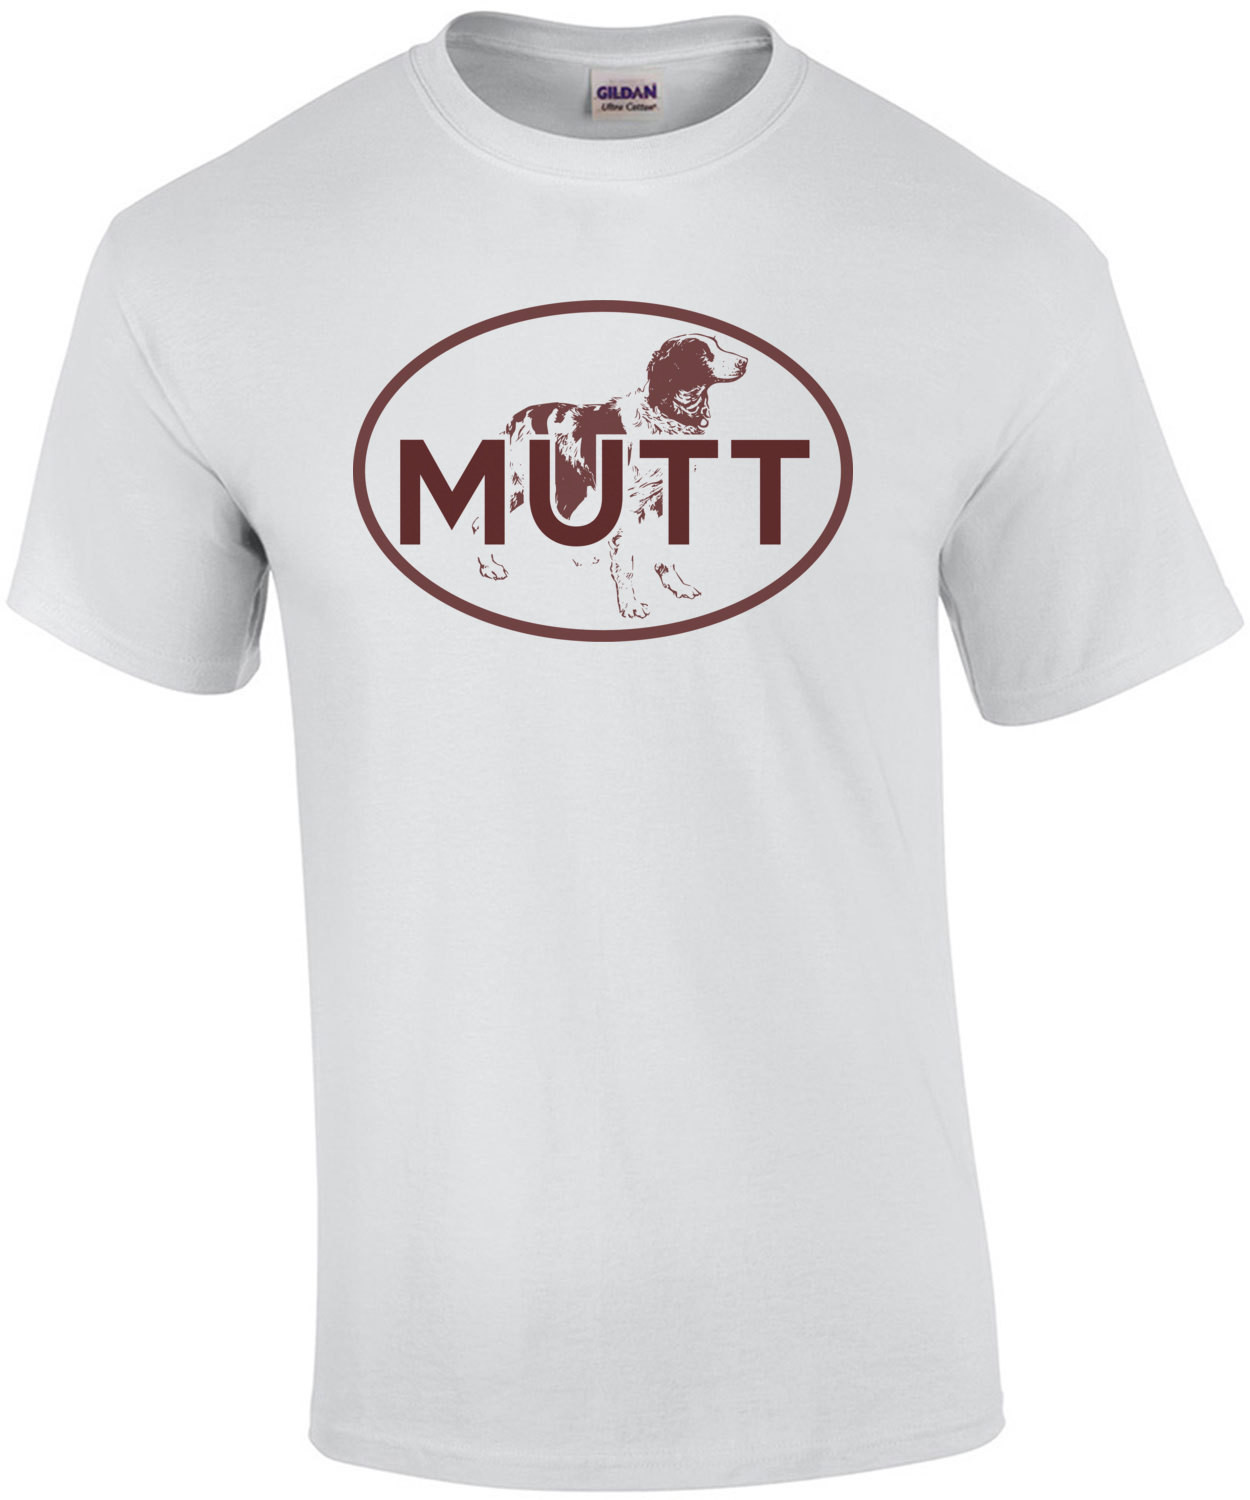 Mutt T-Shirt